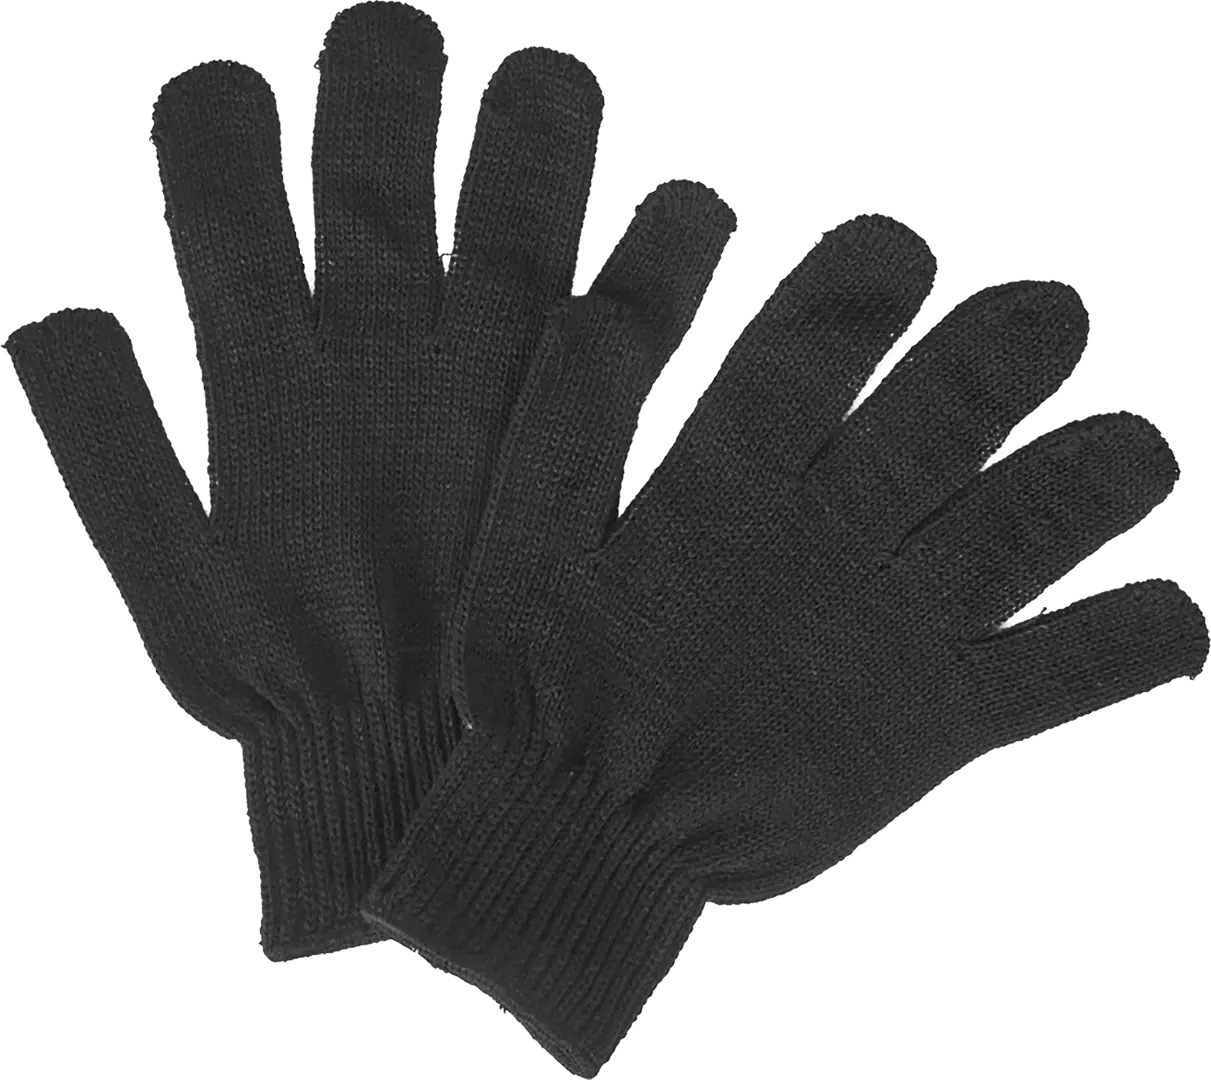 Перчатки полушерстяные ПЕР-ПШ размер 10/XL полушерстяные перчатки спец sb